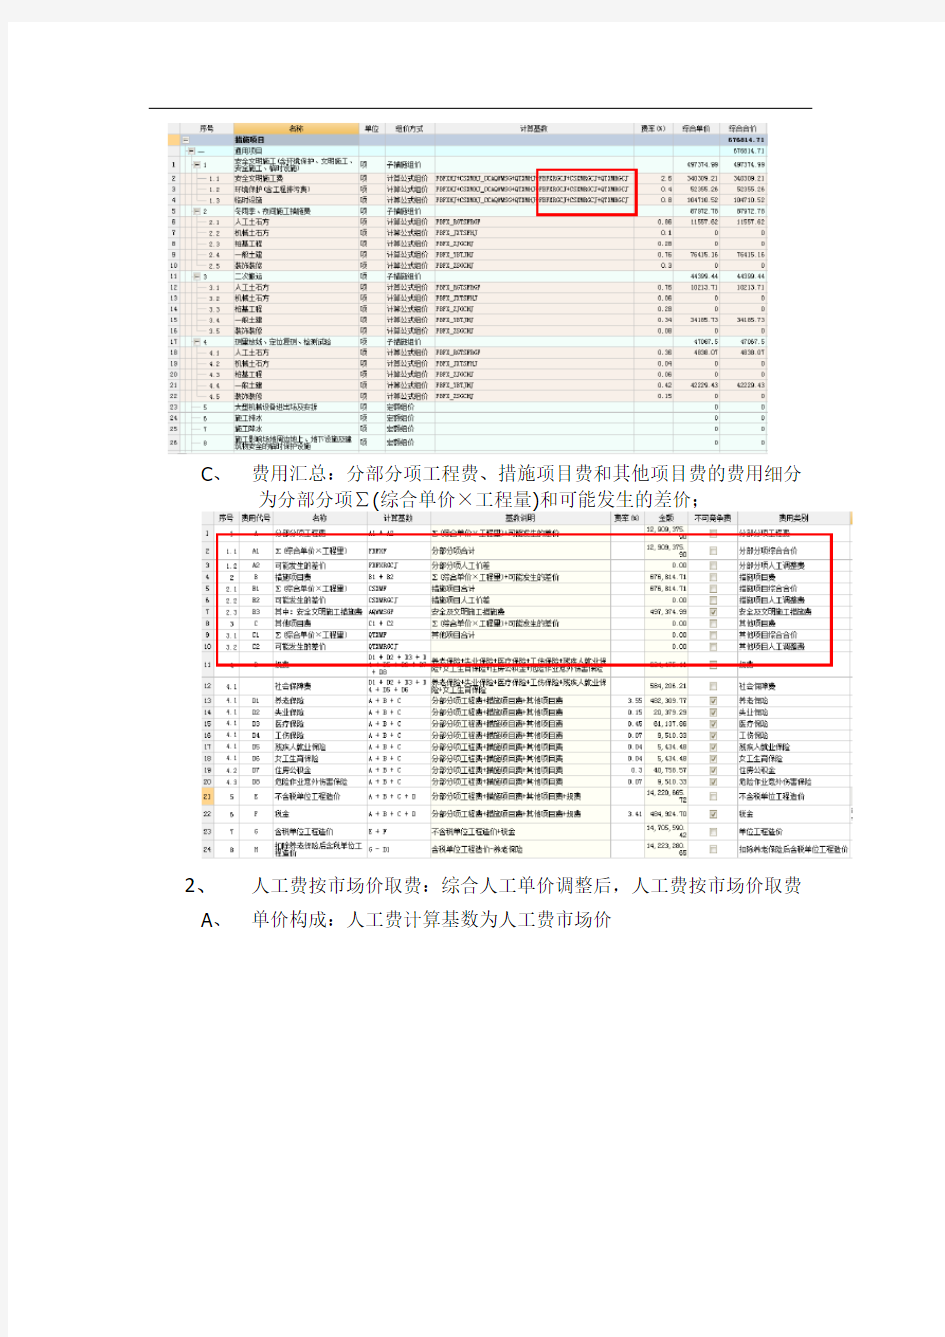 关于广联达计价软件_GBQ4.0陕西地区4943版发版说明